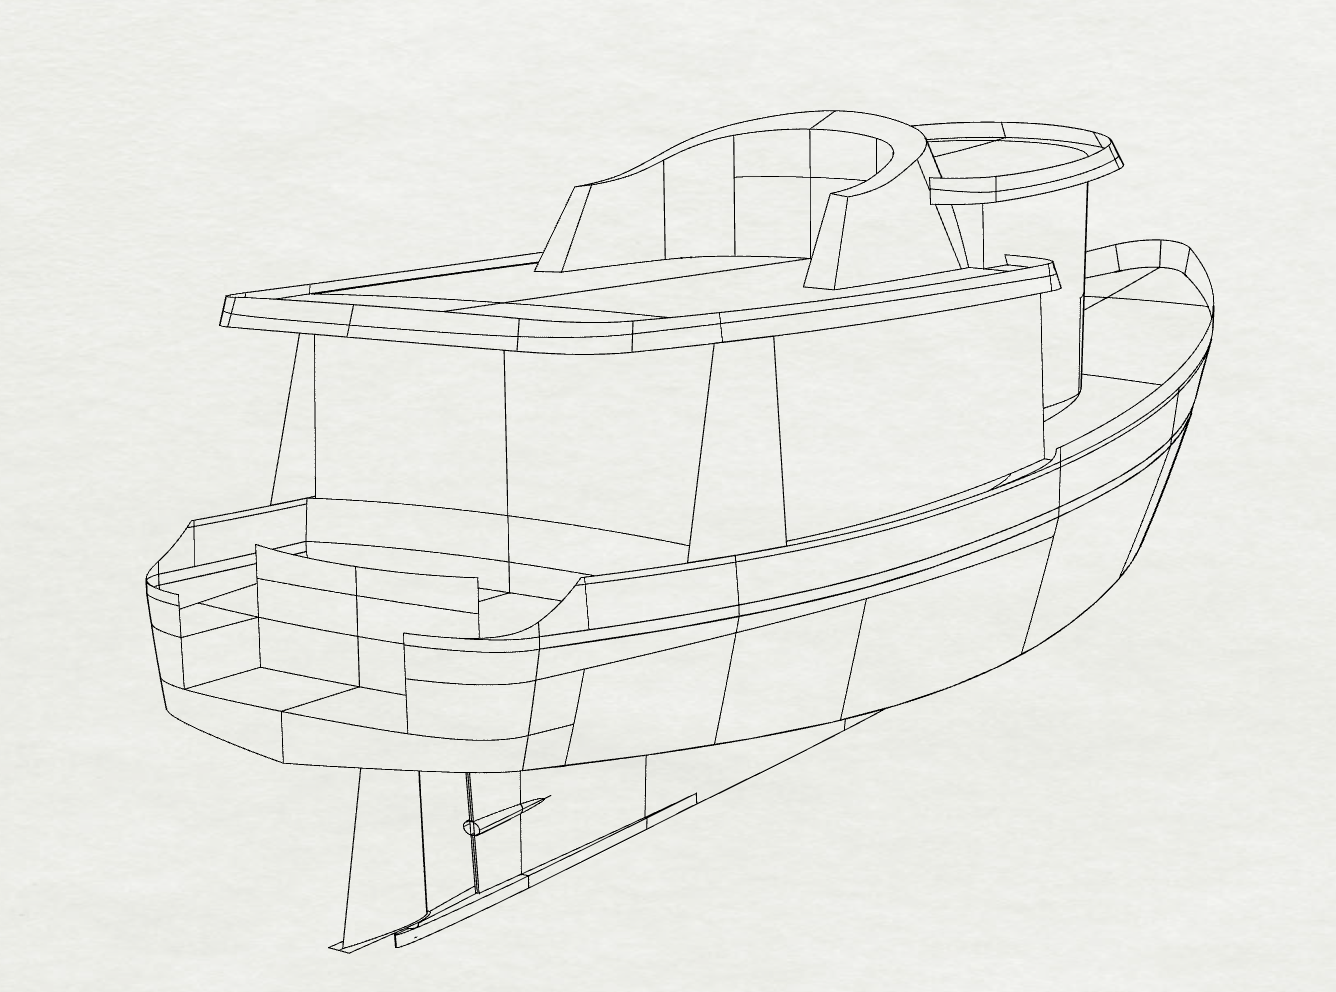 45' Widebody Trawler Yacht GANNET - Kasten Marine Design, Inc.